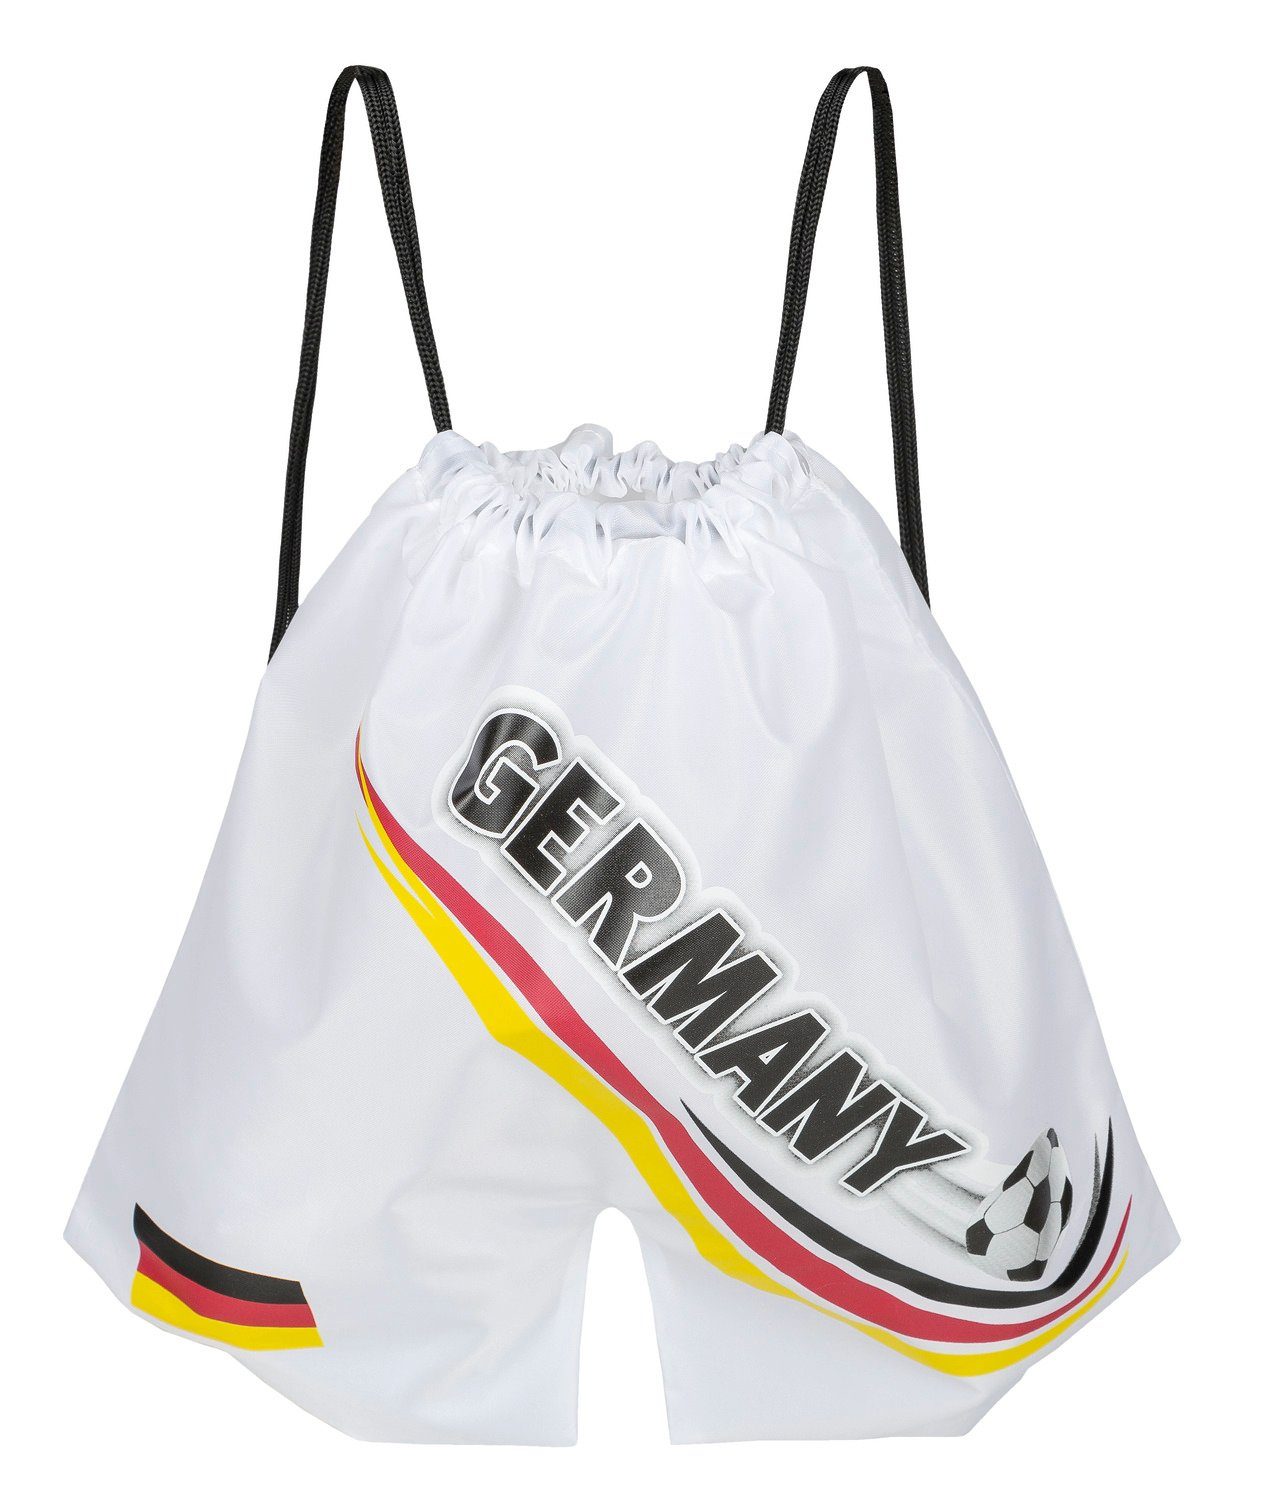 Idena Turnbeutel Idena 21559 - Спортивные сумки Deutschland, in Form einer Sporthose, im